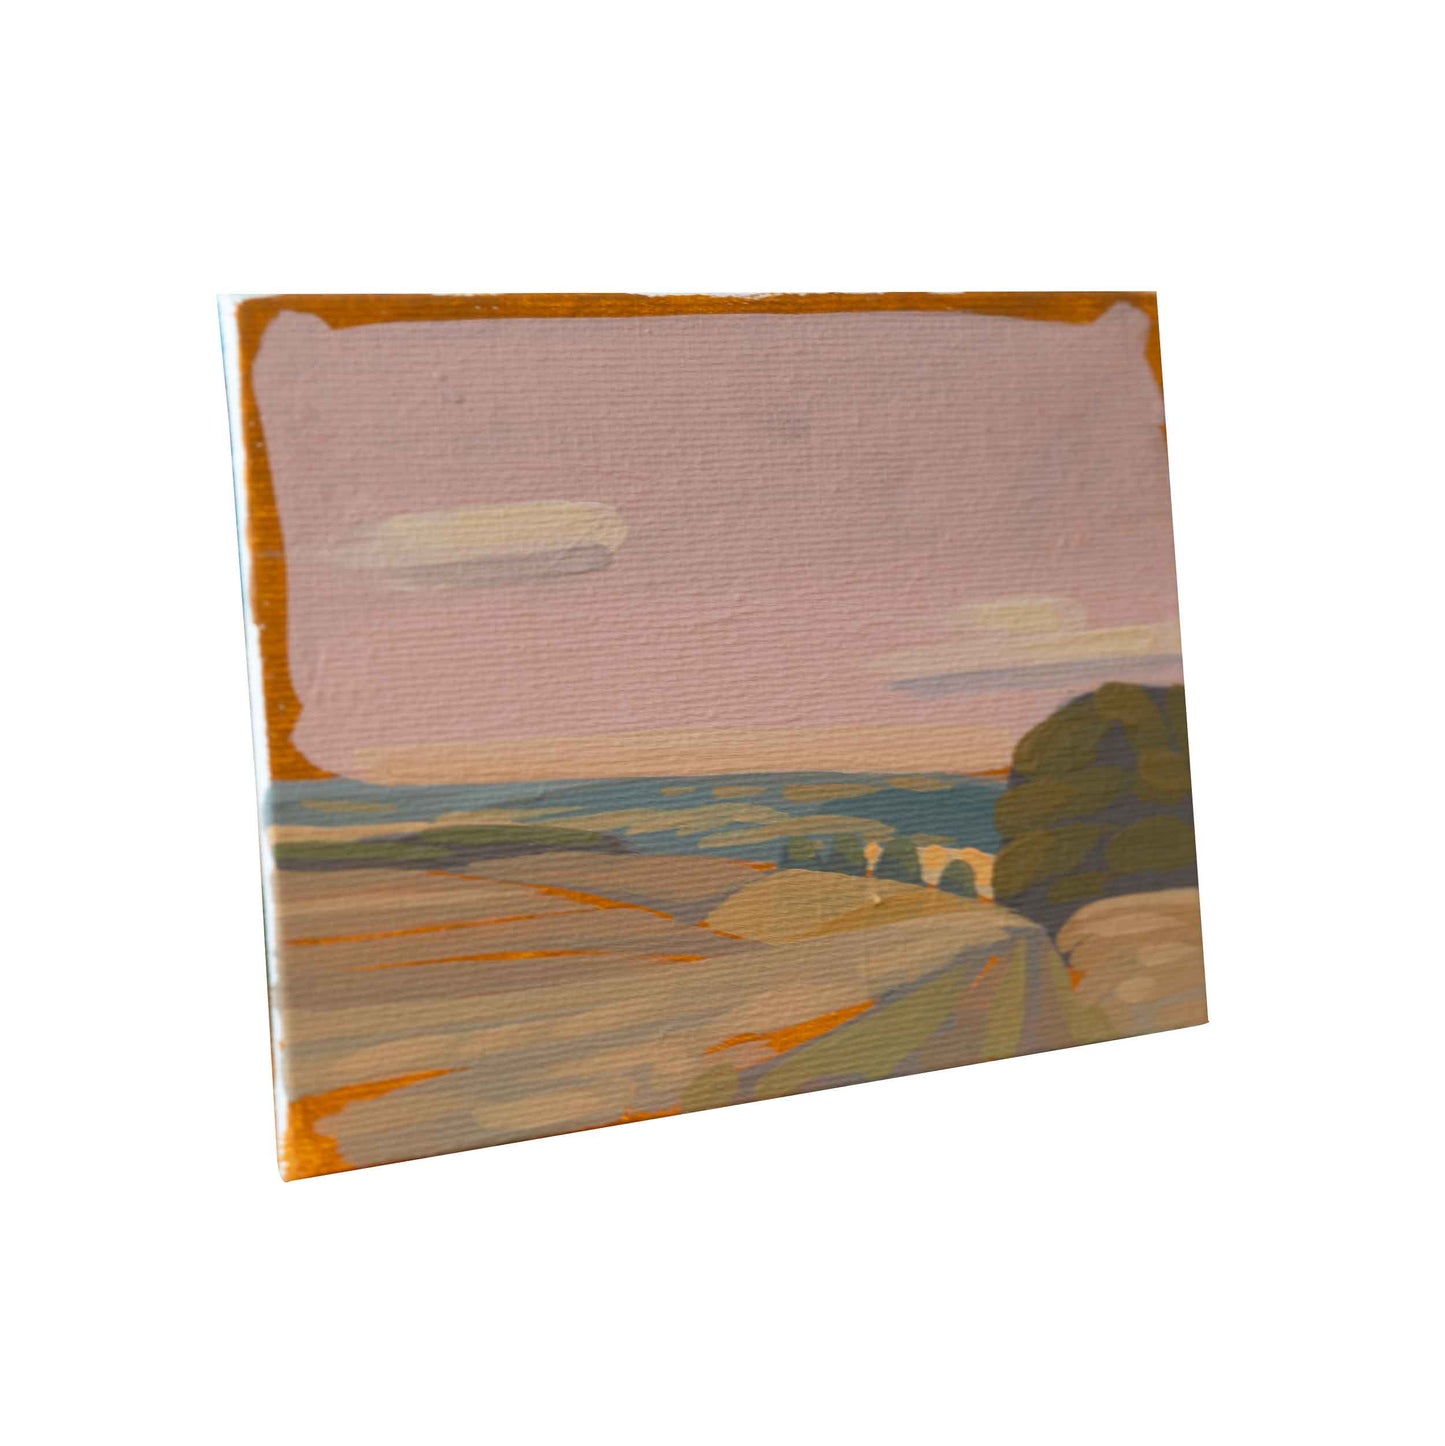 Eifel Landschaft, Unikat, Malerei, handgemaltes Einzelstück, 19 x 14,5 cm, mit Rahmen